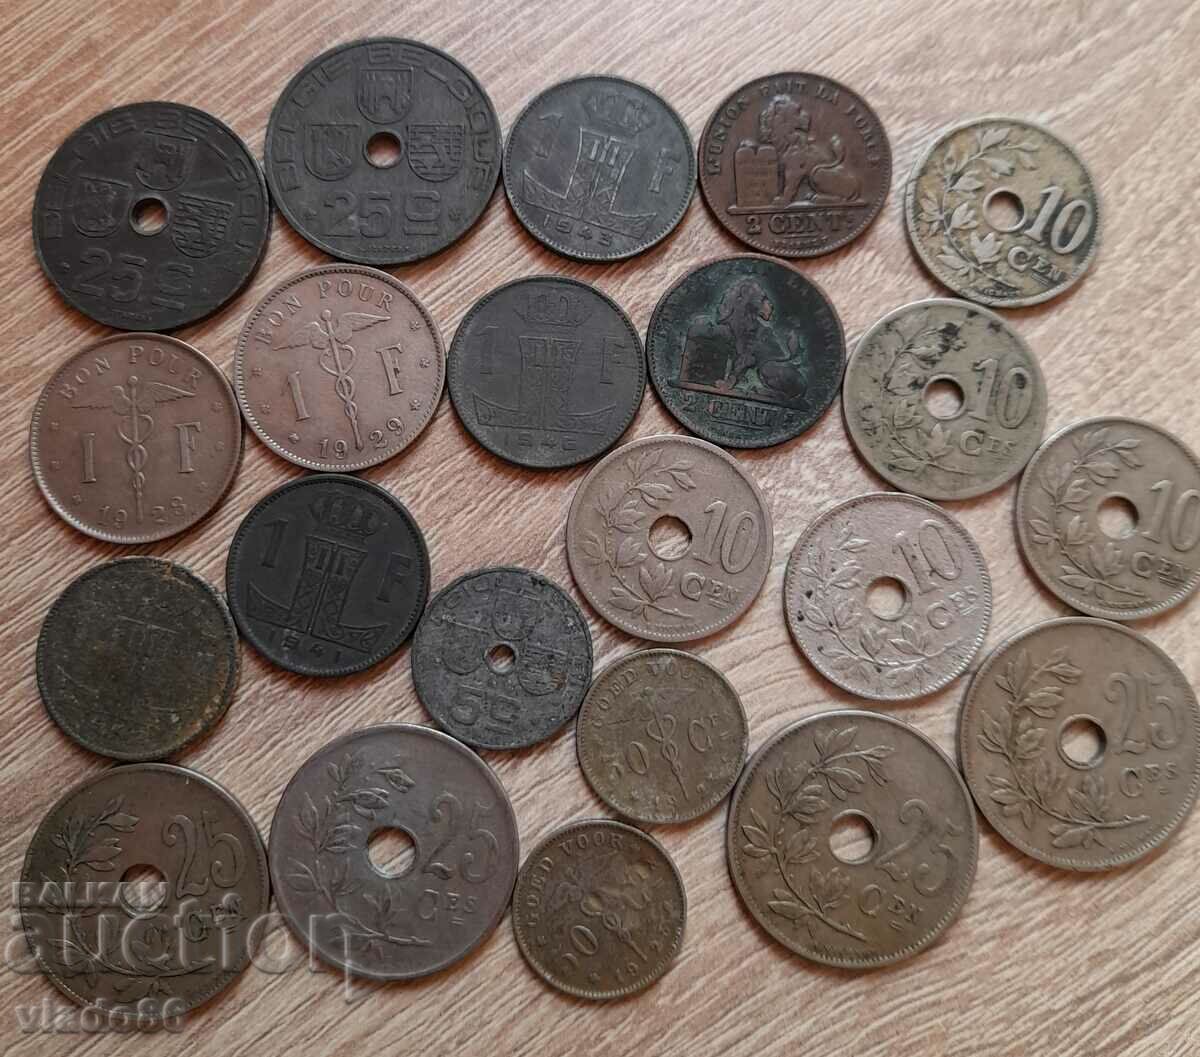 Πολλά παλιά βελγικά μη επαναλαμβανόμενα νομίσματα